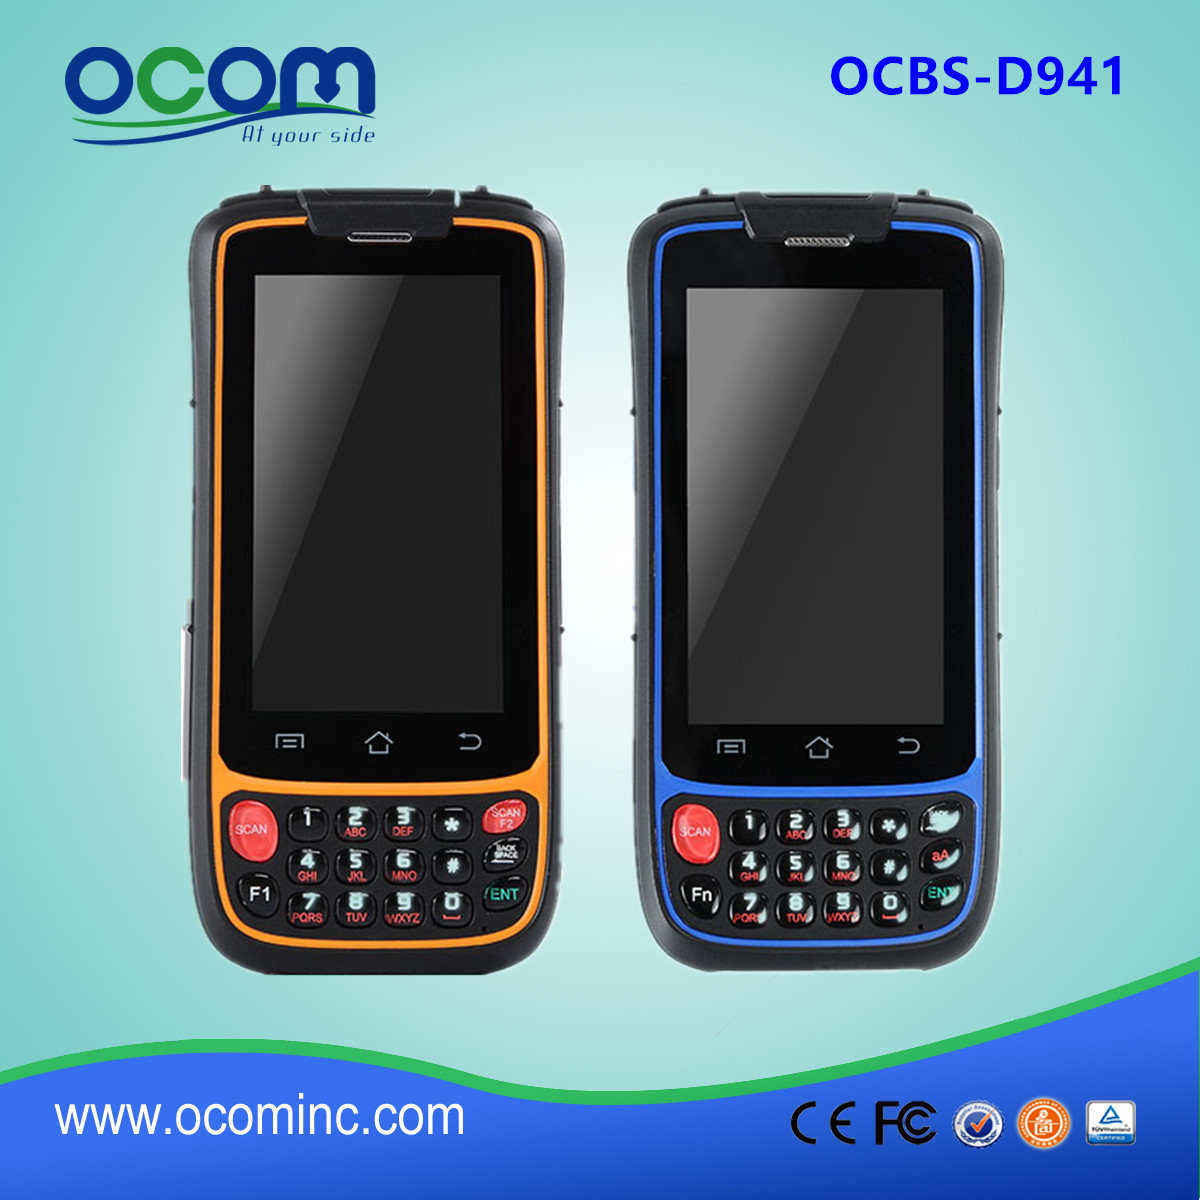 OCBs-D7000 --- Cina ha fatto touch screen di alta qualità Android pda